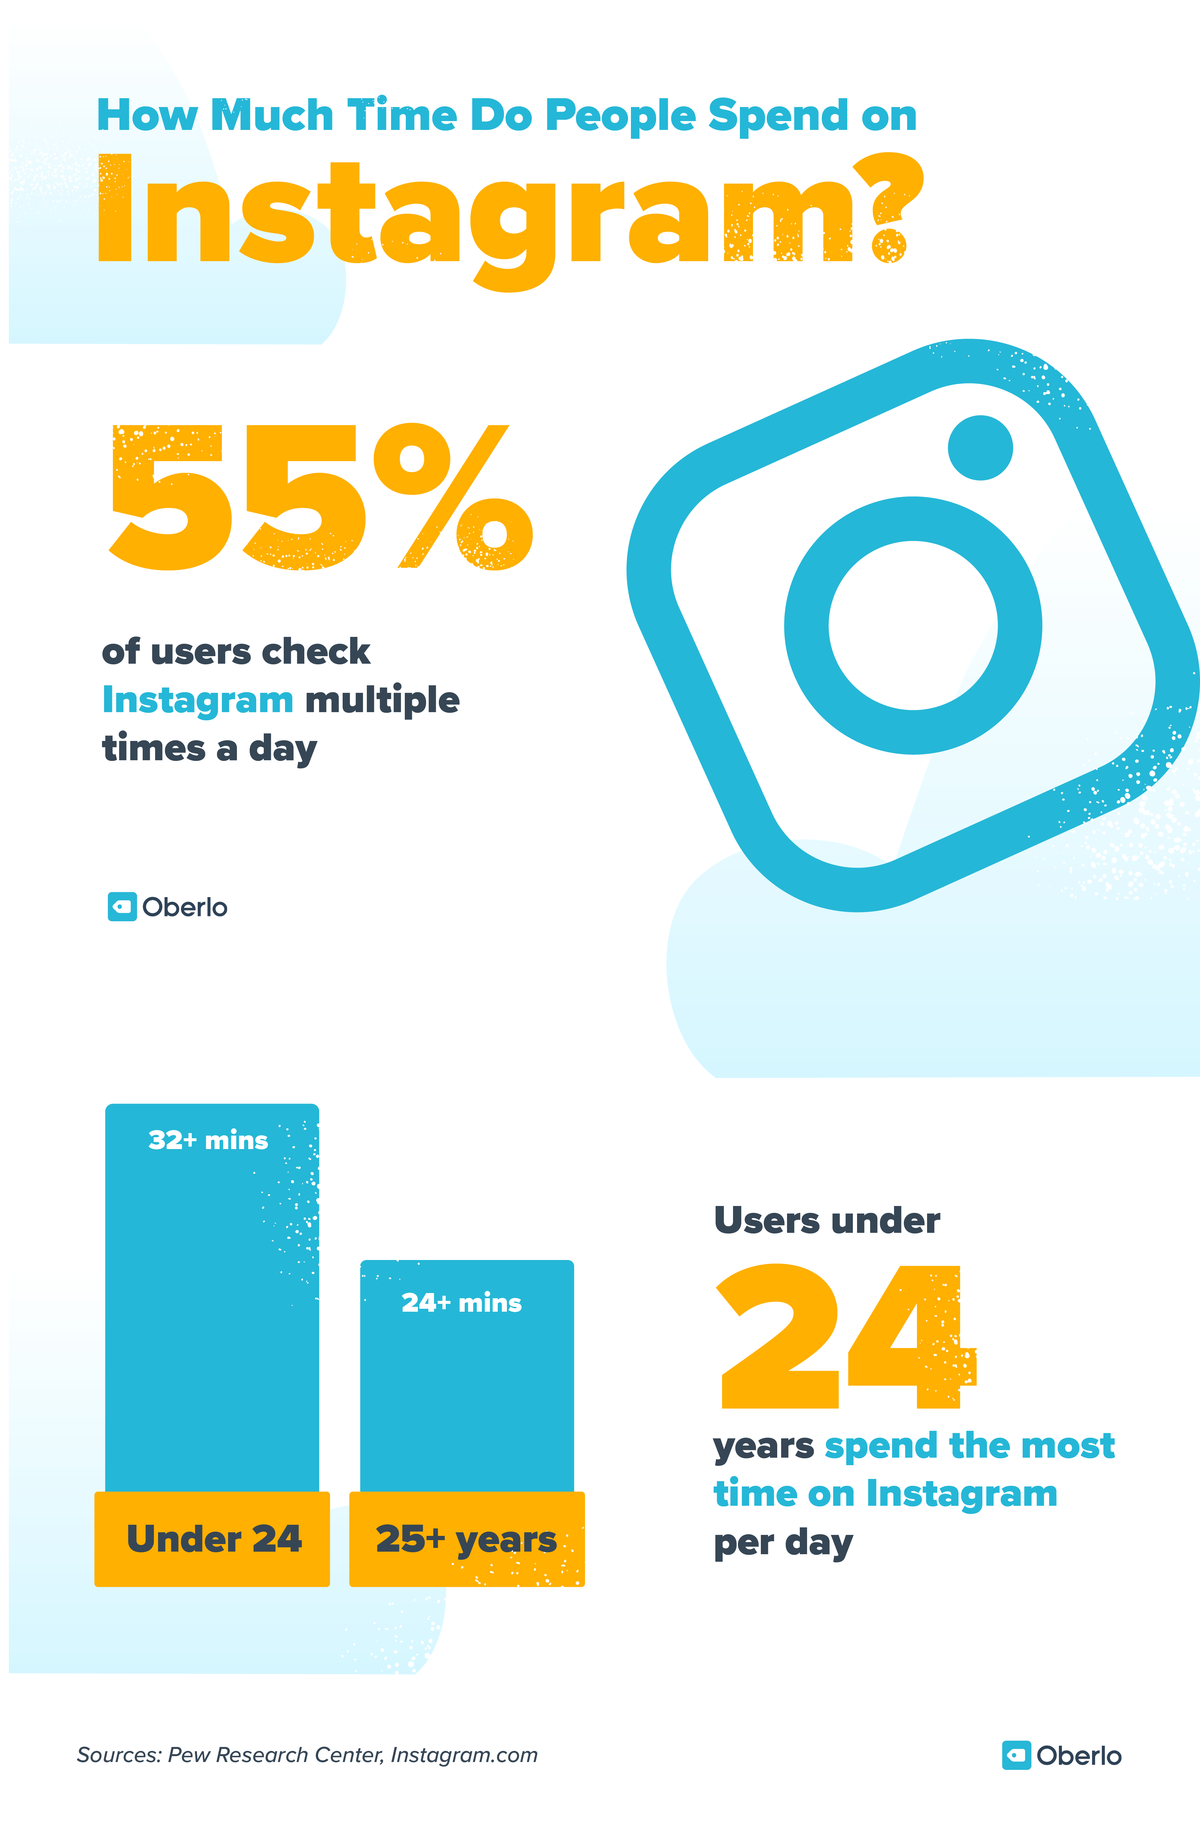 Статистика маркетинга на друштвеним мрежама: 55% корисника инстаграма то проверава више пута дневно. Корисници млађи од 24 године проводе највише времена на Инстаграму дневно (више од 32 минуте)